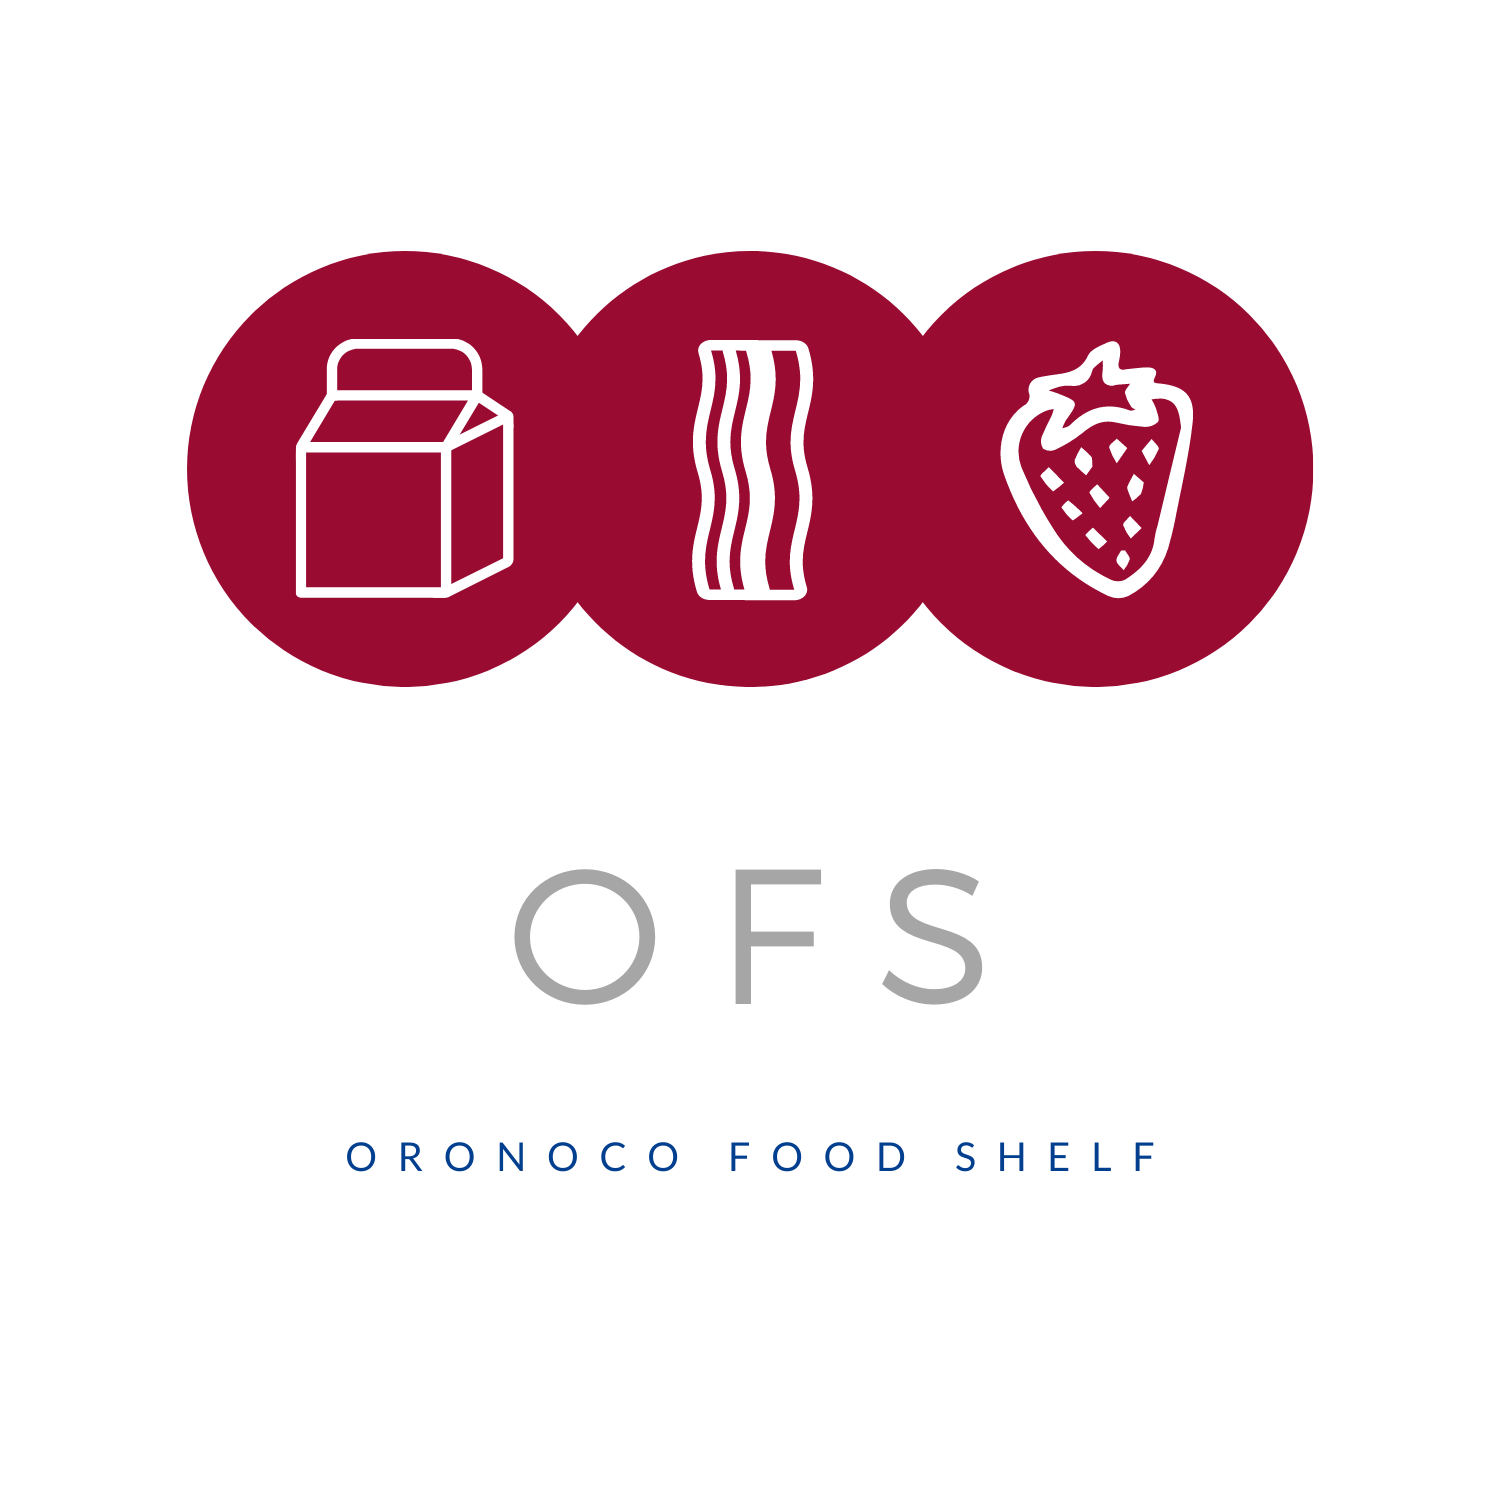 Oronoco Food Shelf - OFS